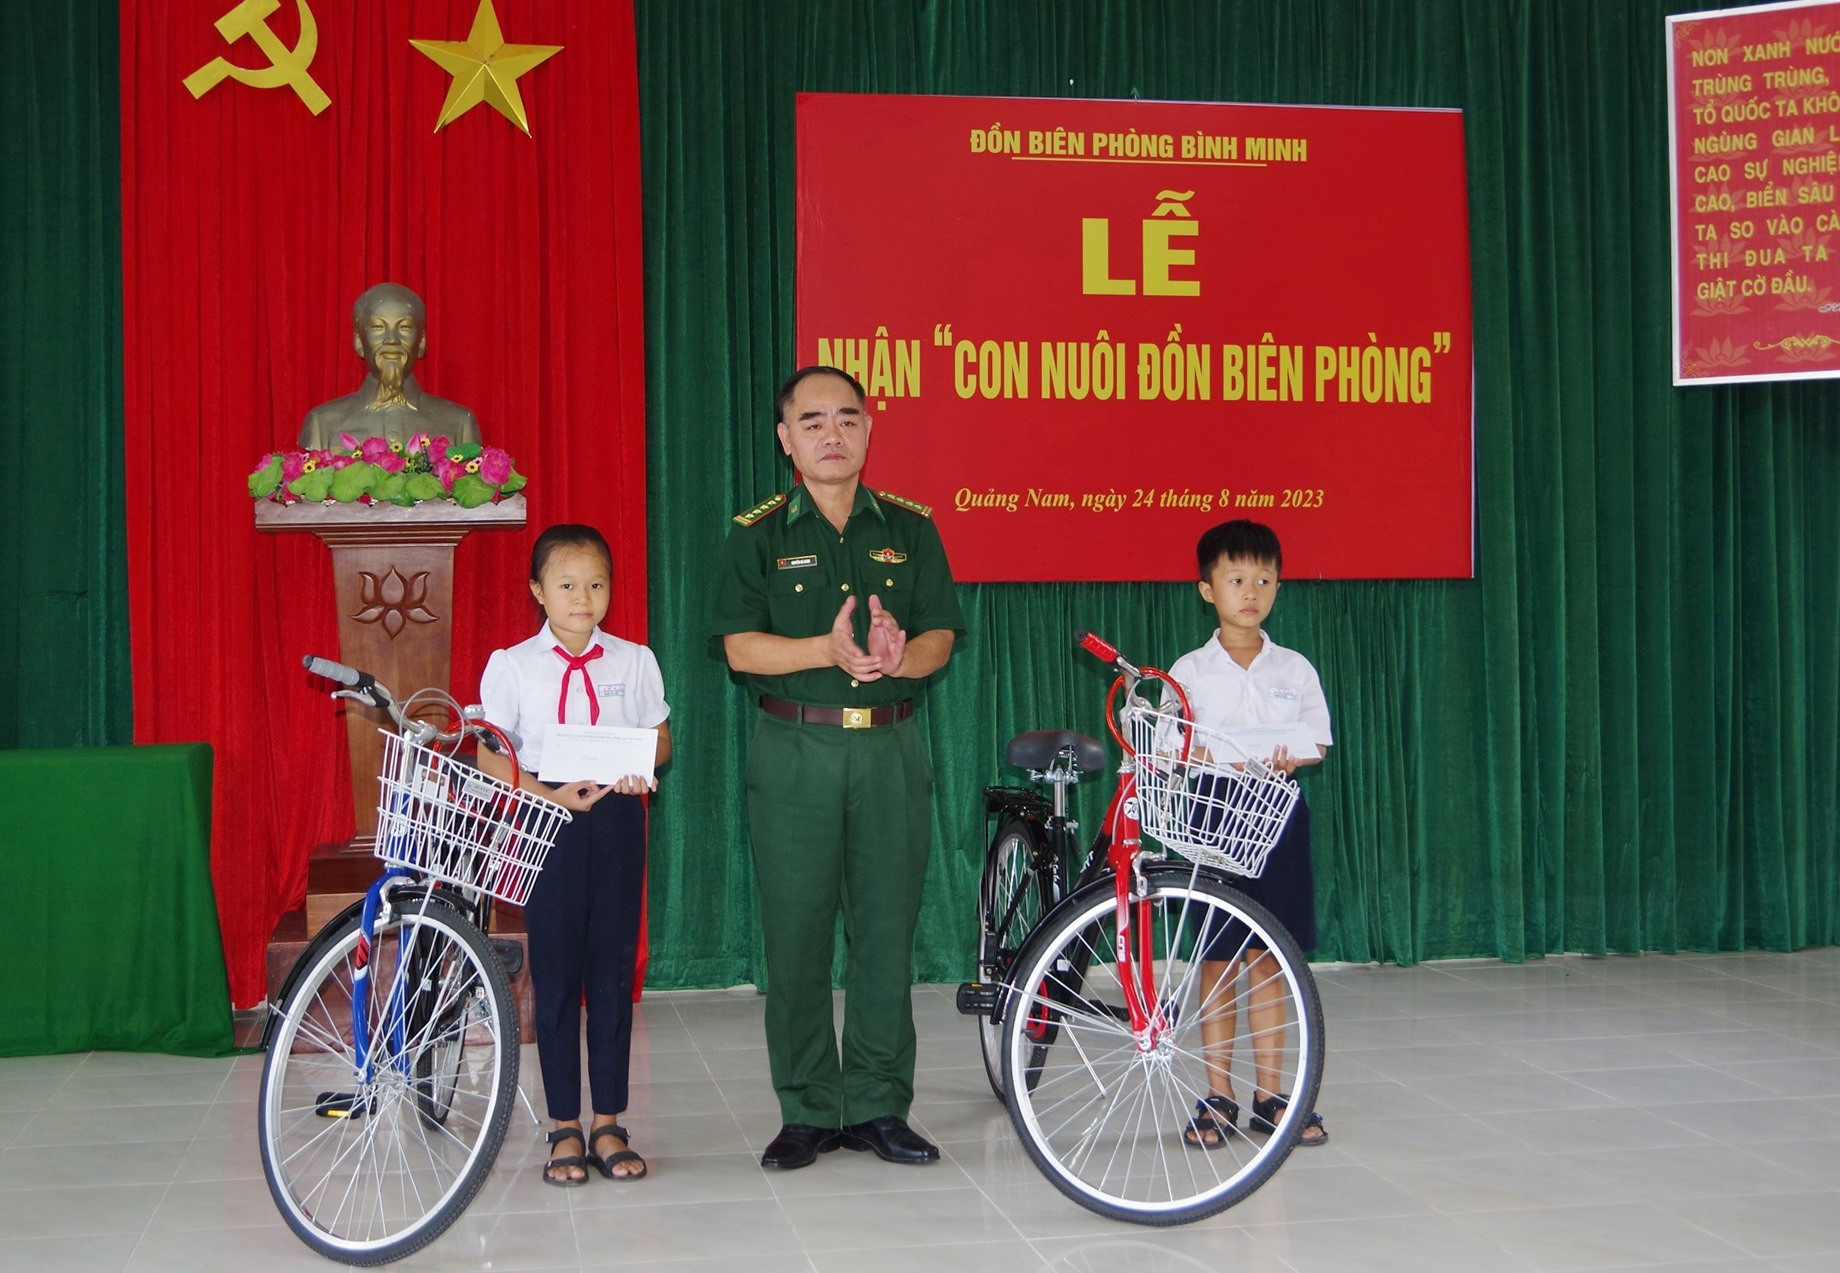 Bộ Chỉ huy BĐBP tỉnh trao xe đạp cho 2 học sinh Đồn Biên phòng Bình Minh nhận đỡ đầu. Ảnh: HỒNG ANH